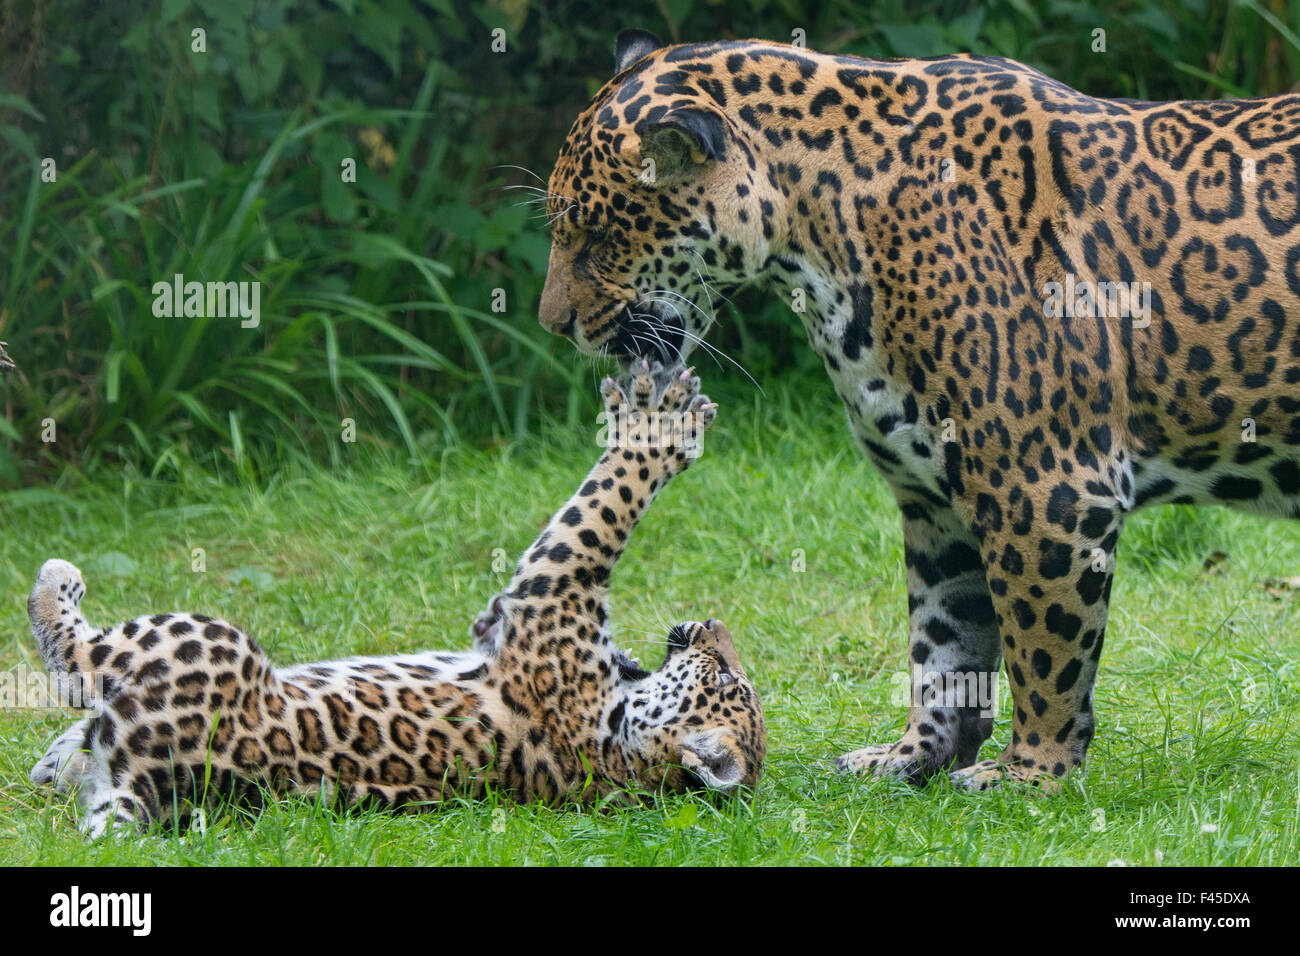 Femme Jaguar (Panthera onca) jouant avec son petit, captive, est présent dans le sud et l'Amérique centrale. Banque D'Images